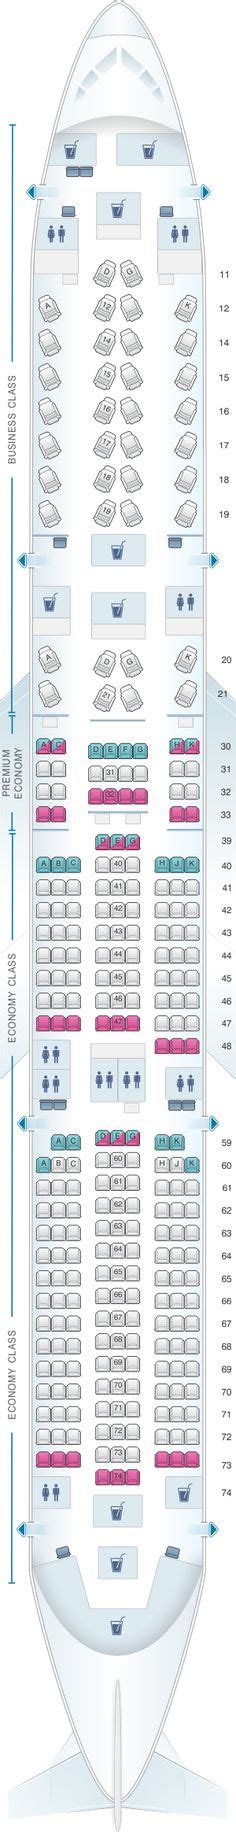 Latam Brasil Airbus A350 900 359 Seat Map Seating Airbus Seating